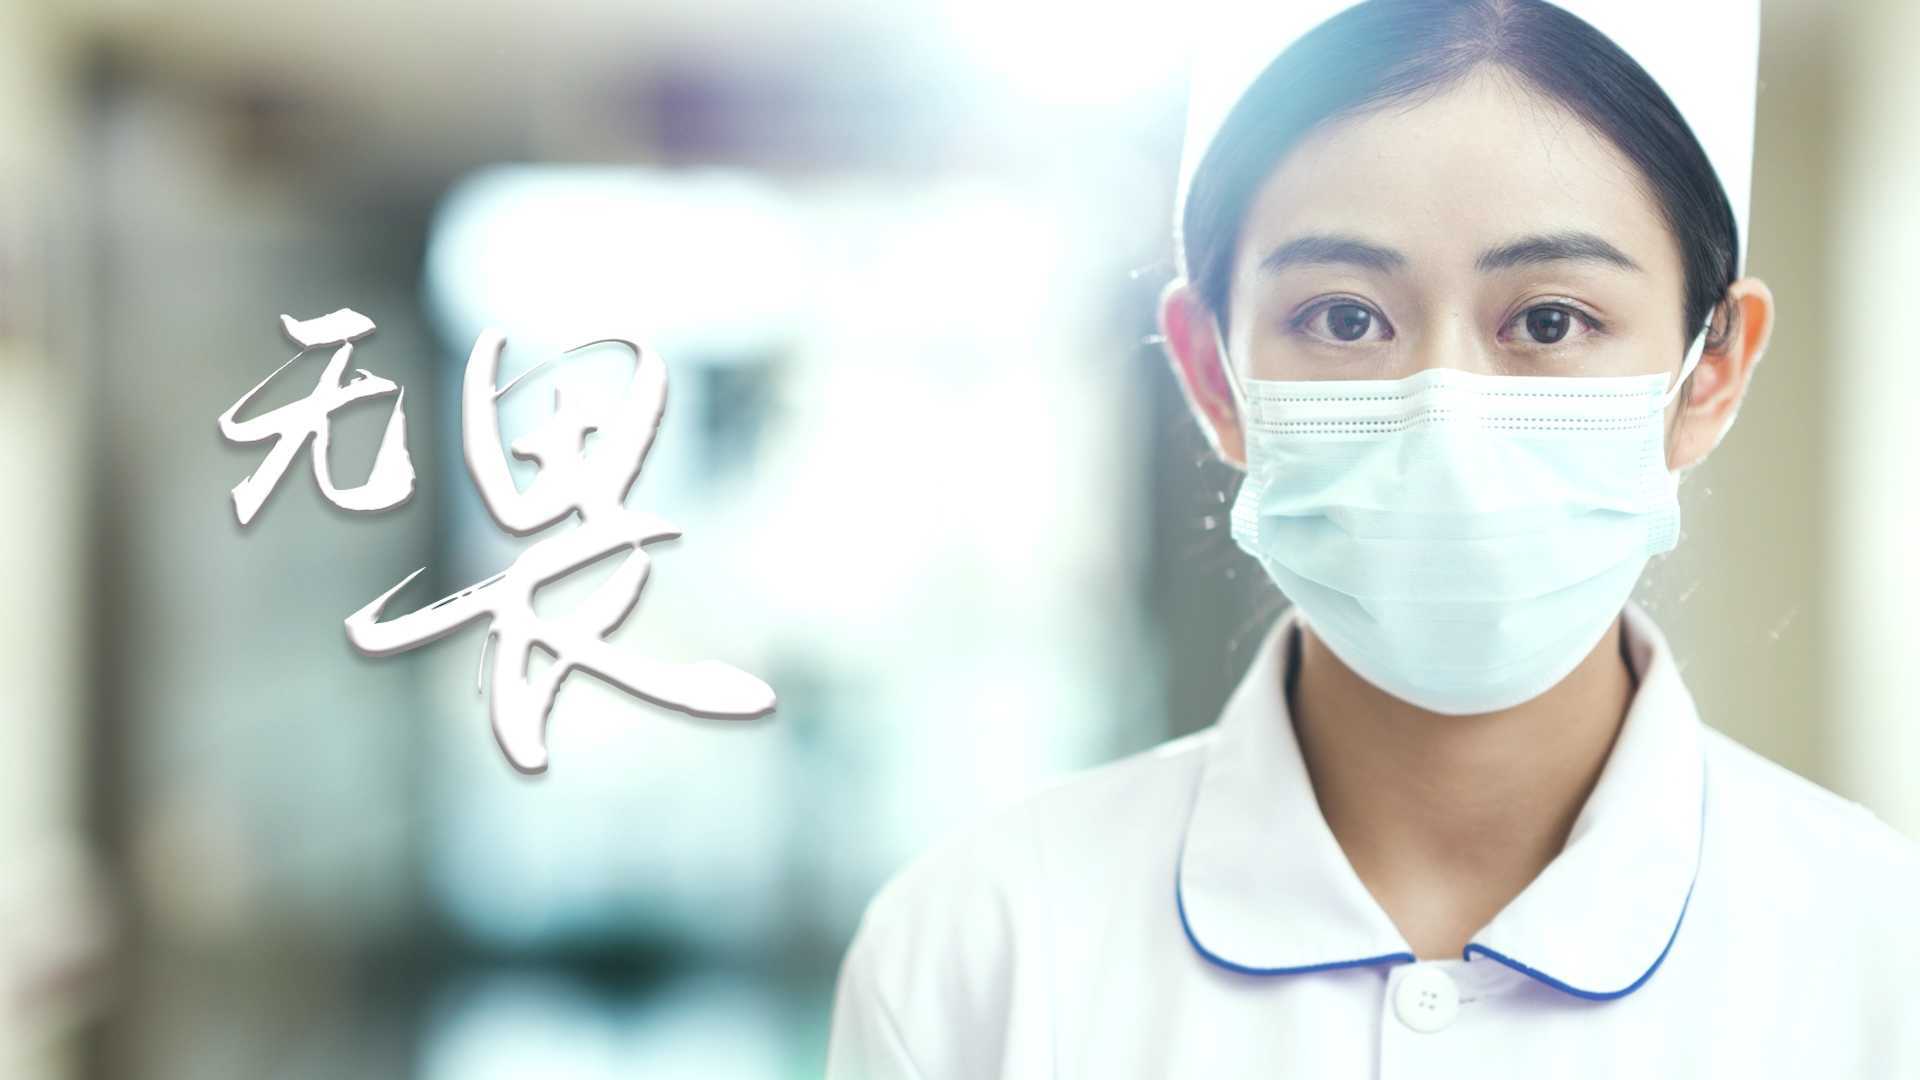 昆华医院护士节形象片《无畏》